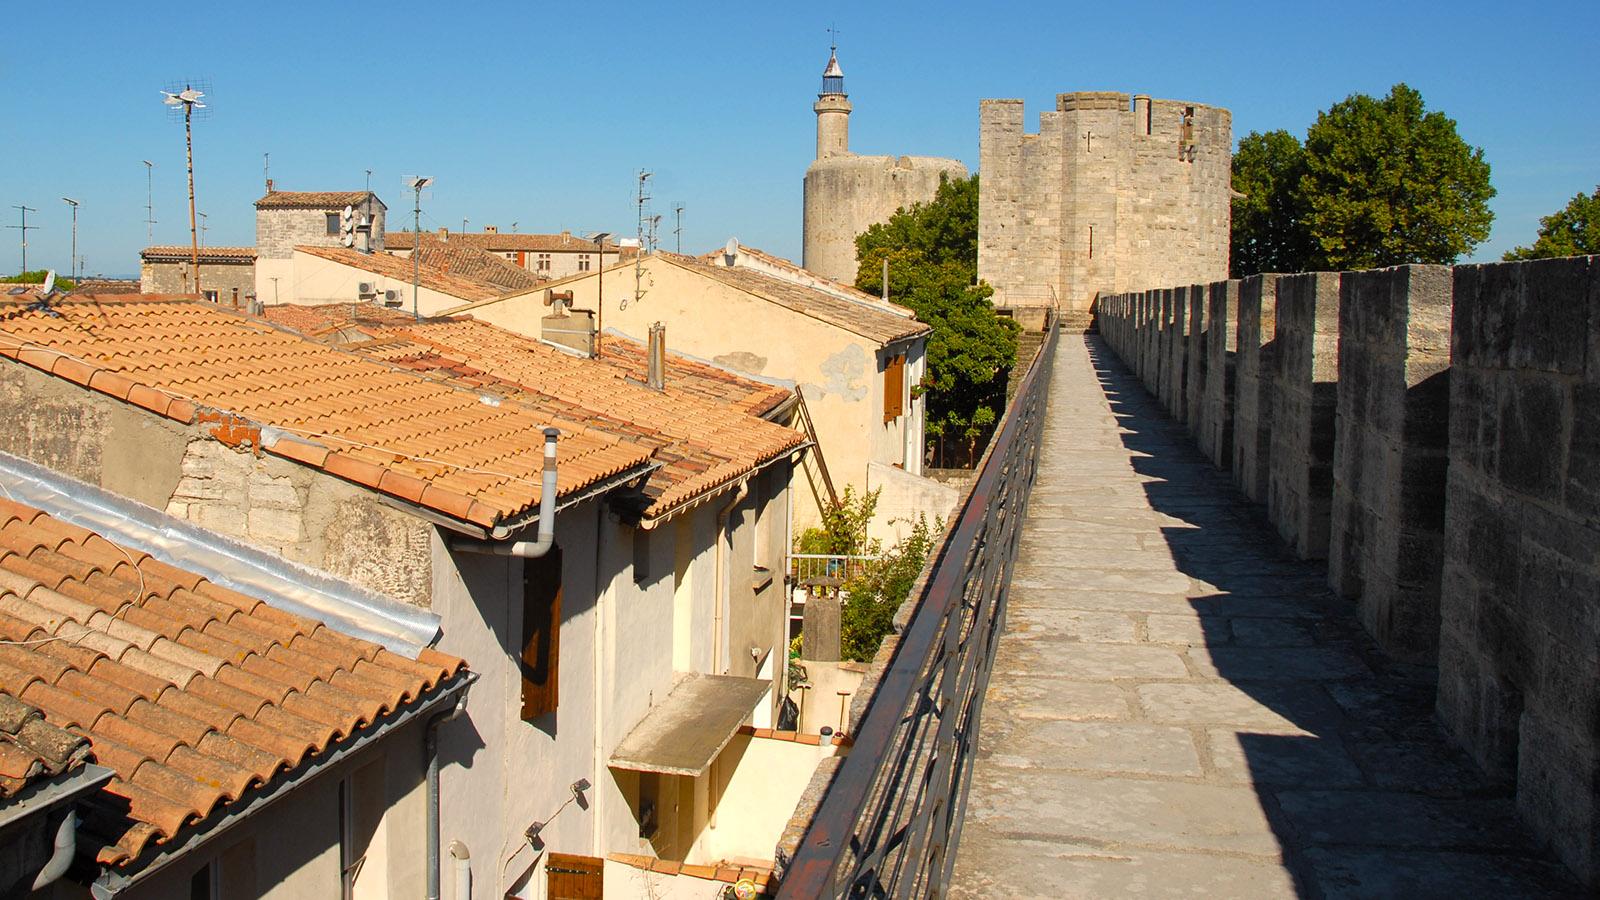 Aigues-Mortes, nördliche Stadtmauer mit Tour de Constance. Foto: Hilke Maunder